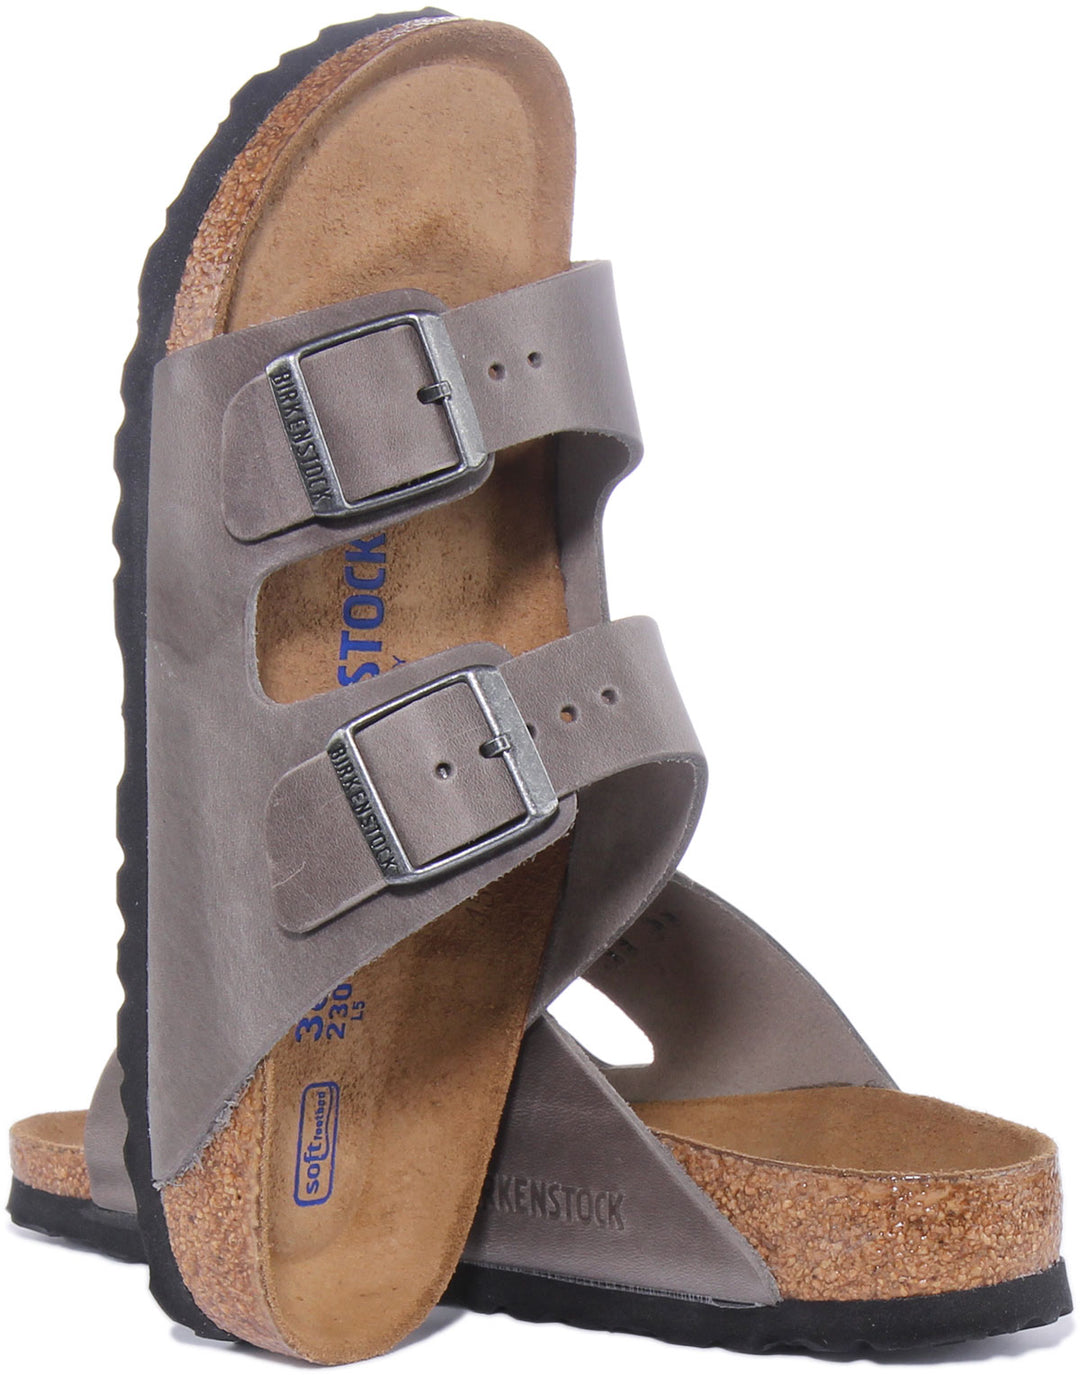 Birkenstock Arizona SBF Sandalo da con 2 cinturini in pelle in grigio